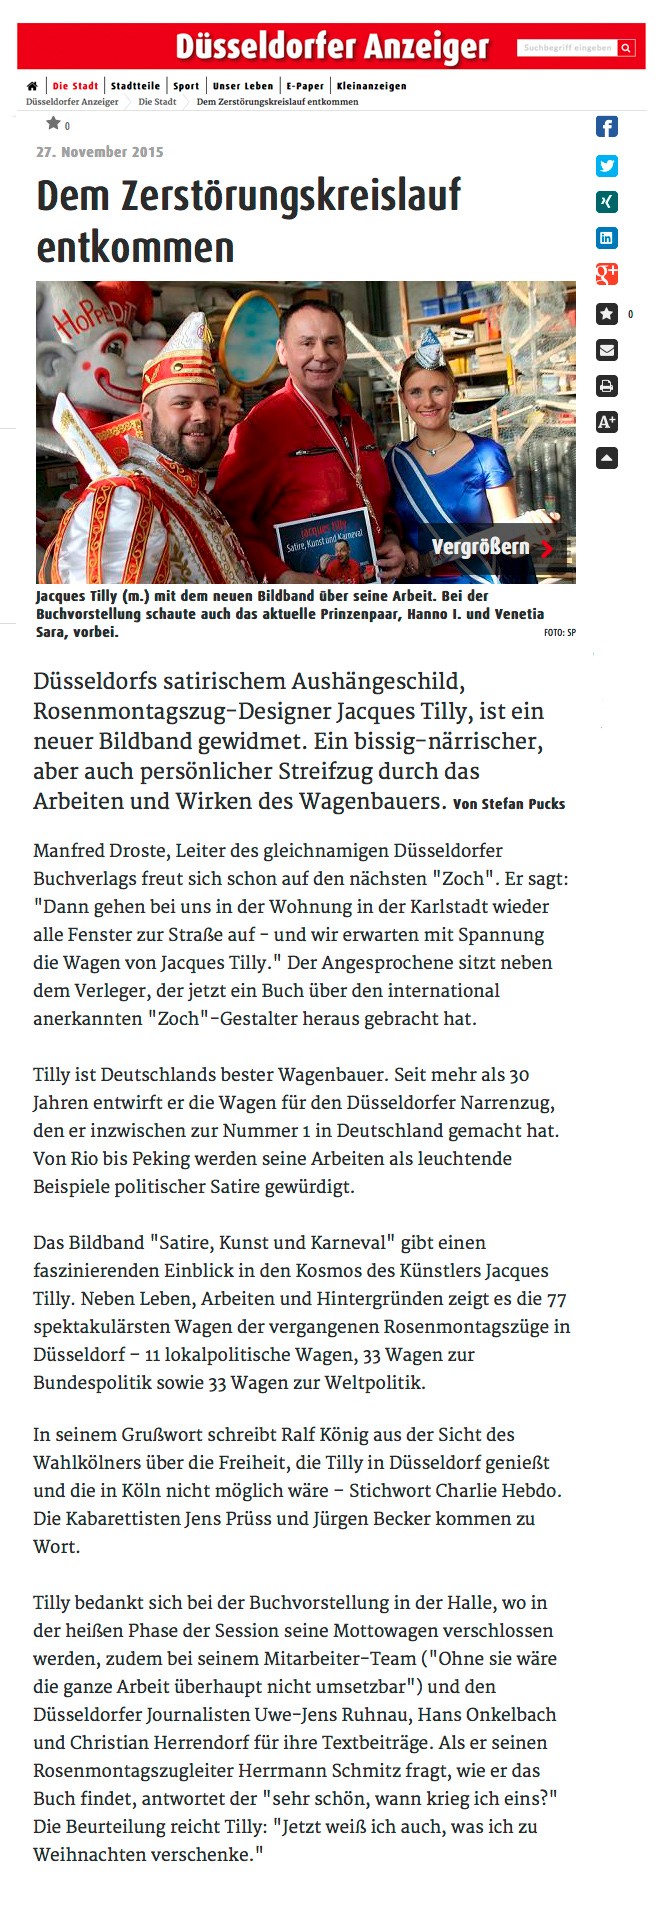 Düsseldorfer Anzeiger online, 27.11.2015 Artikel im Wortlaut auf Düsseldorfer Anzeiger online [https://www.duesseldorfer-anzeiger.de/die-stadt/dem-zerstoerungskreislauf-entkommen-aid-1.5592289]